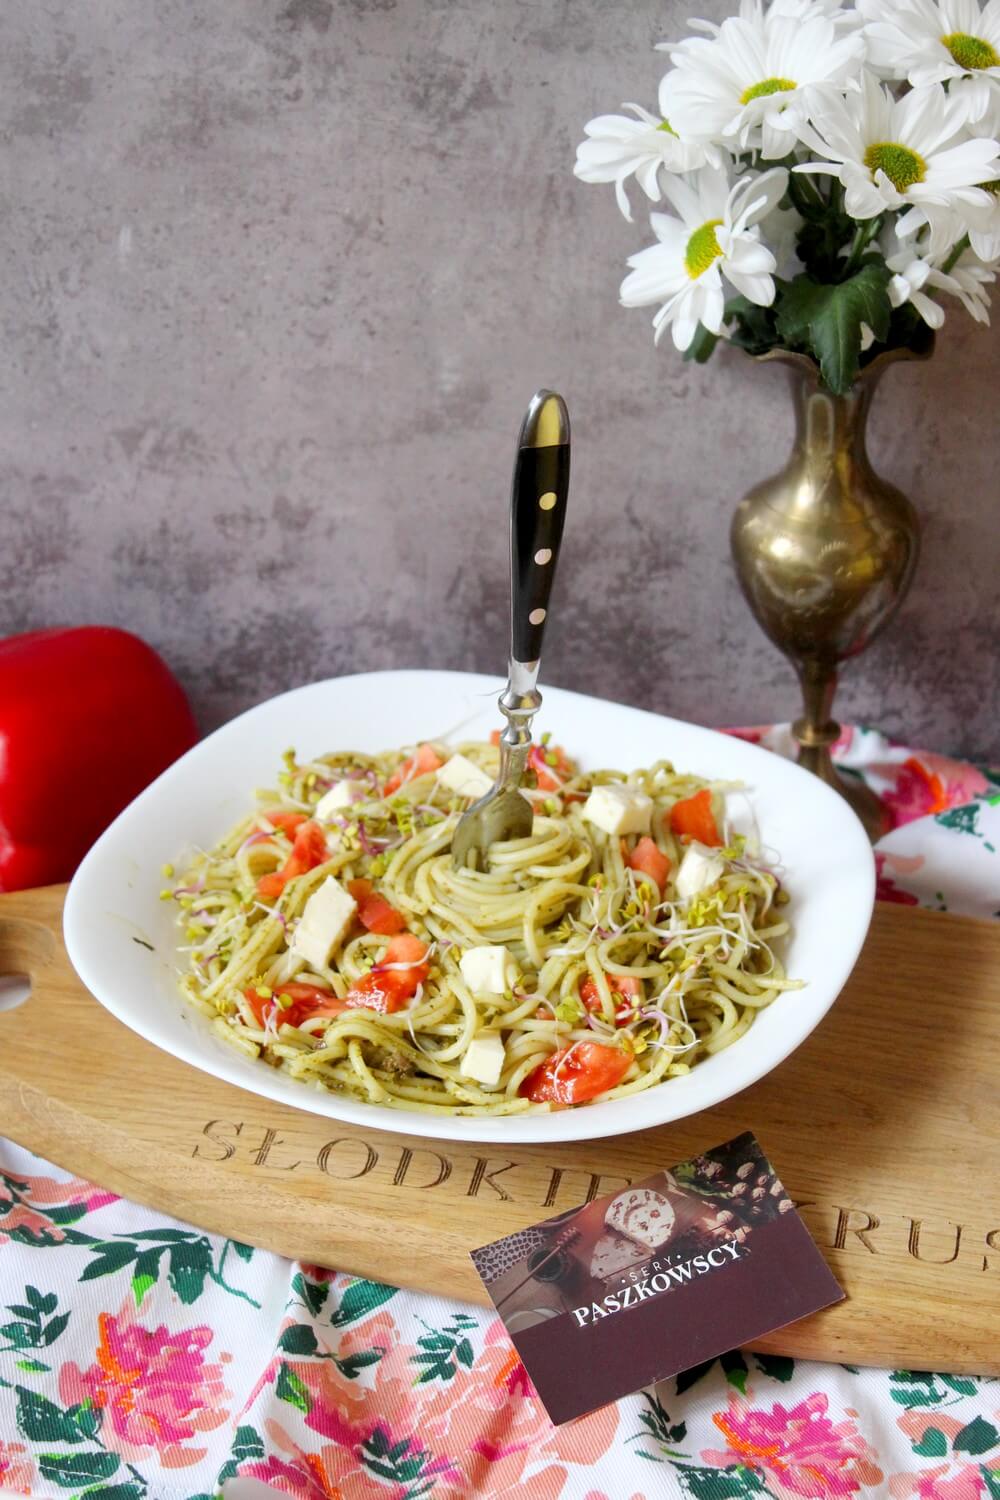 Spaghetti z zielonym pesto, serem i pomidorami | Słodkie okruszki